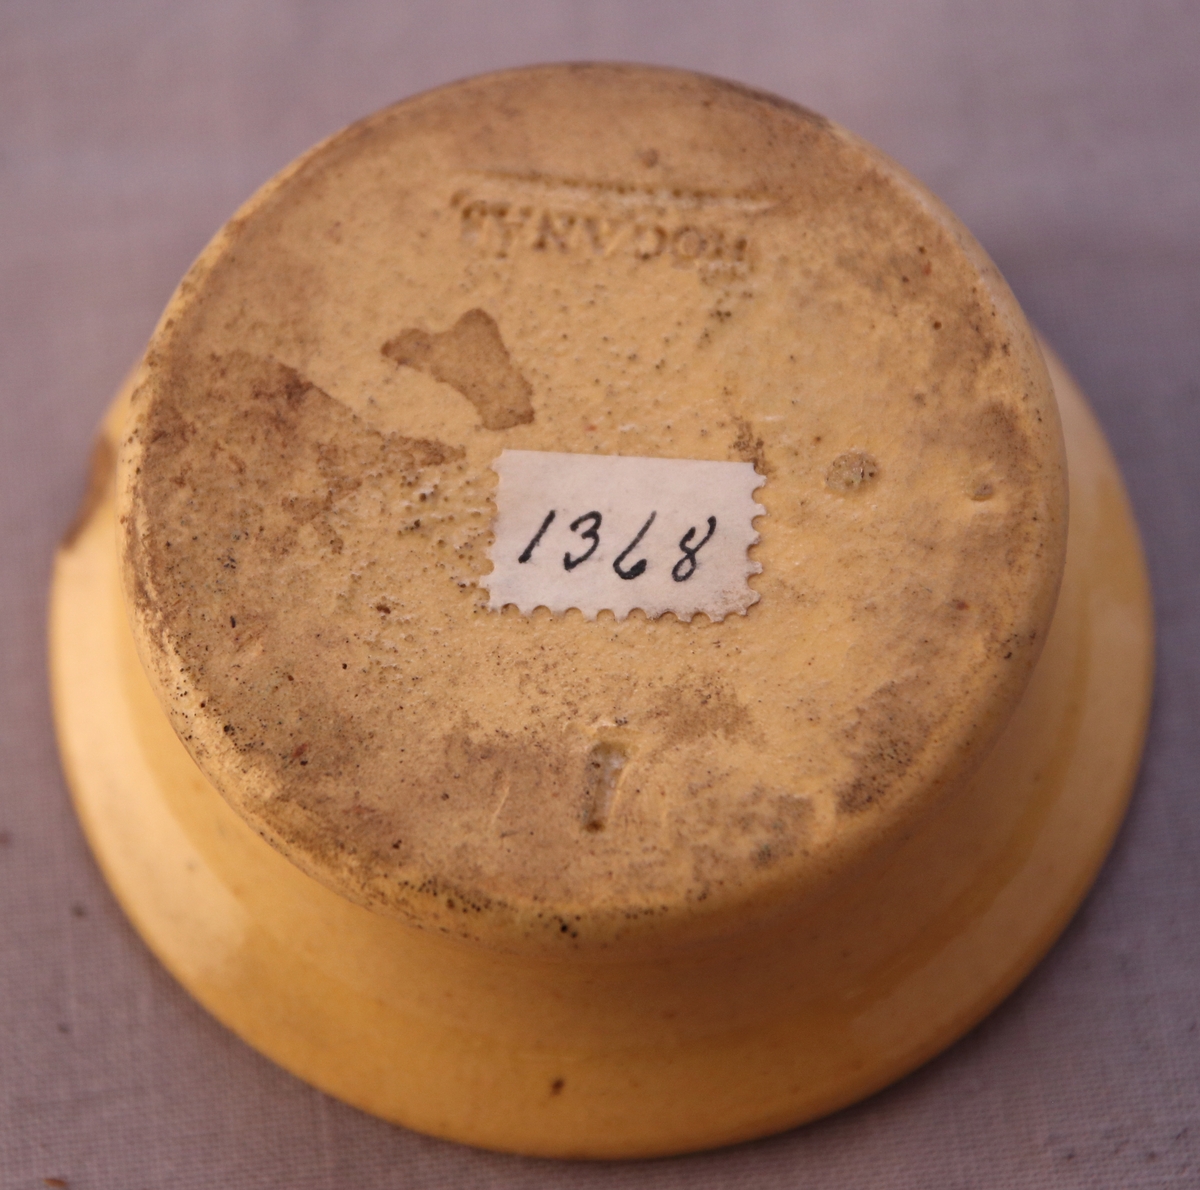 Sanddosa i keramik med gul glasyr.  Stämplat ”1” (möjligtvis förstahandssortering?) och ”Höganäs” undertill.